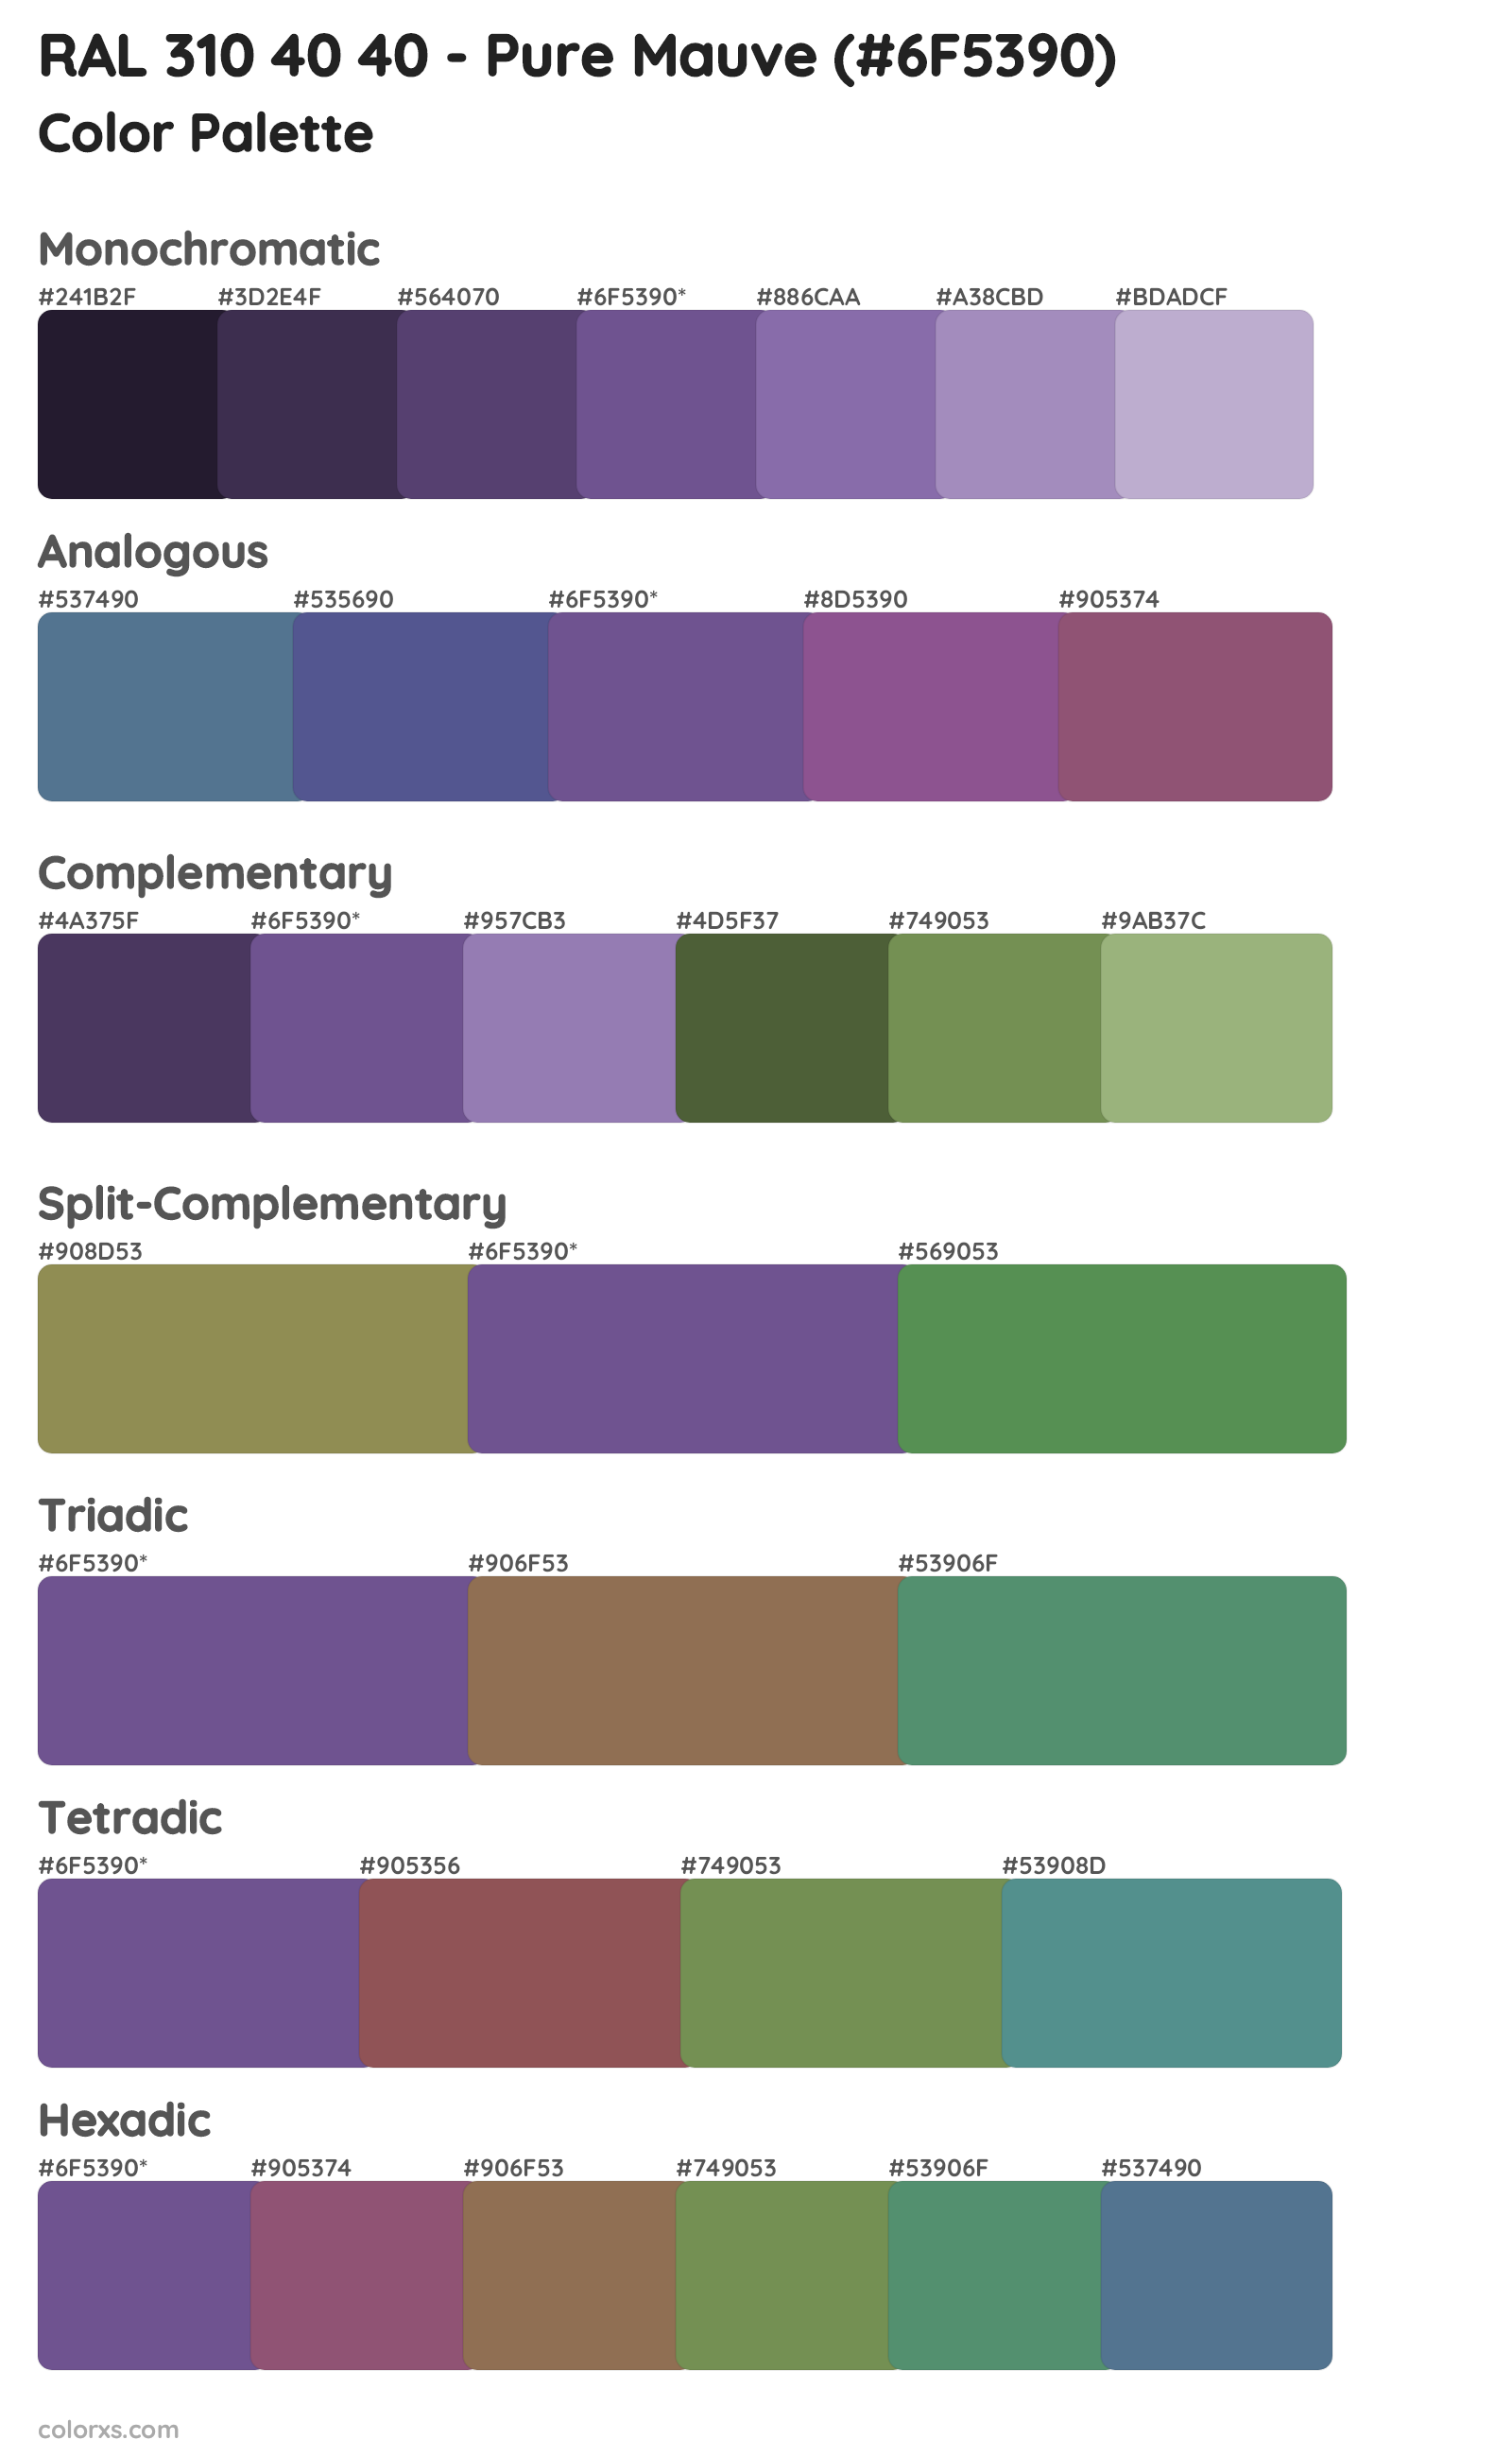 RAL 310 40 40 - Pure Mauve Color Scheme Palettes